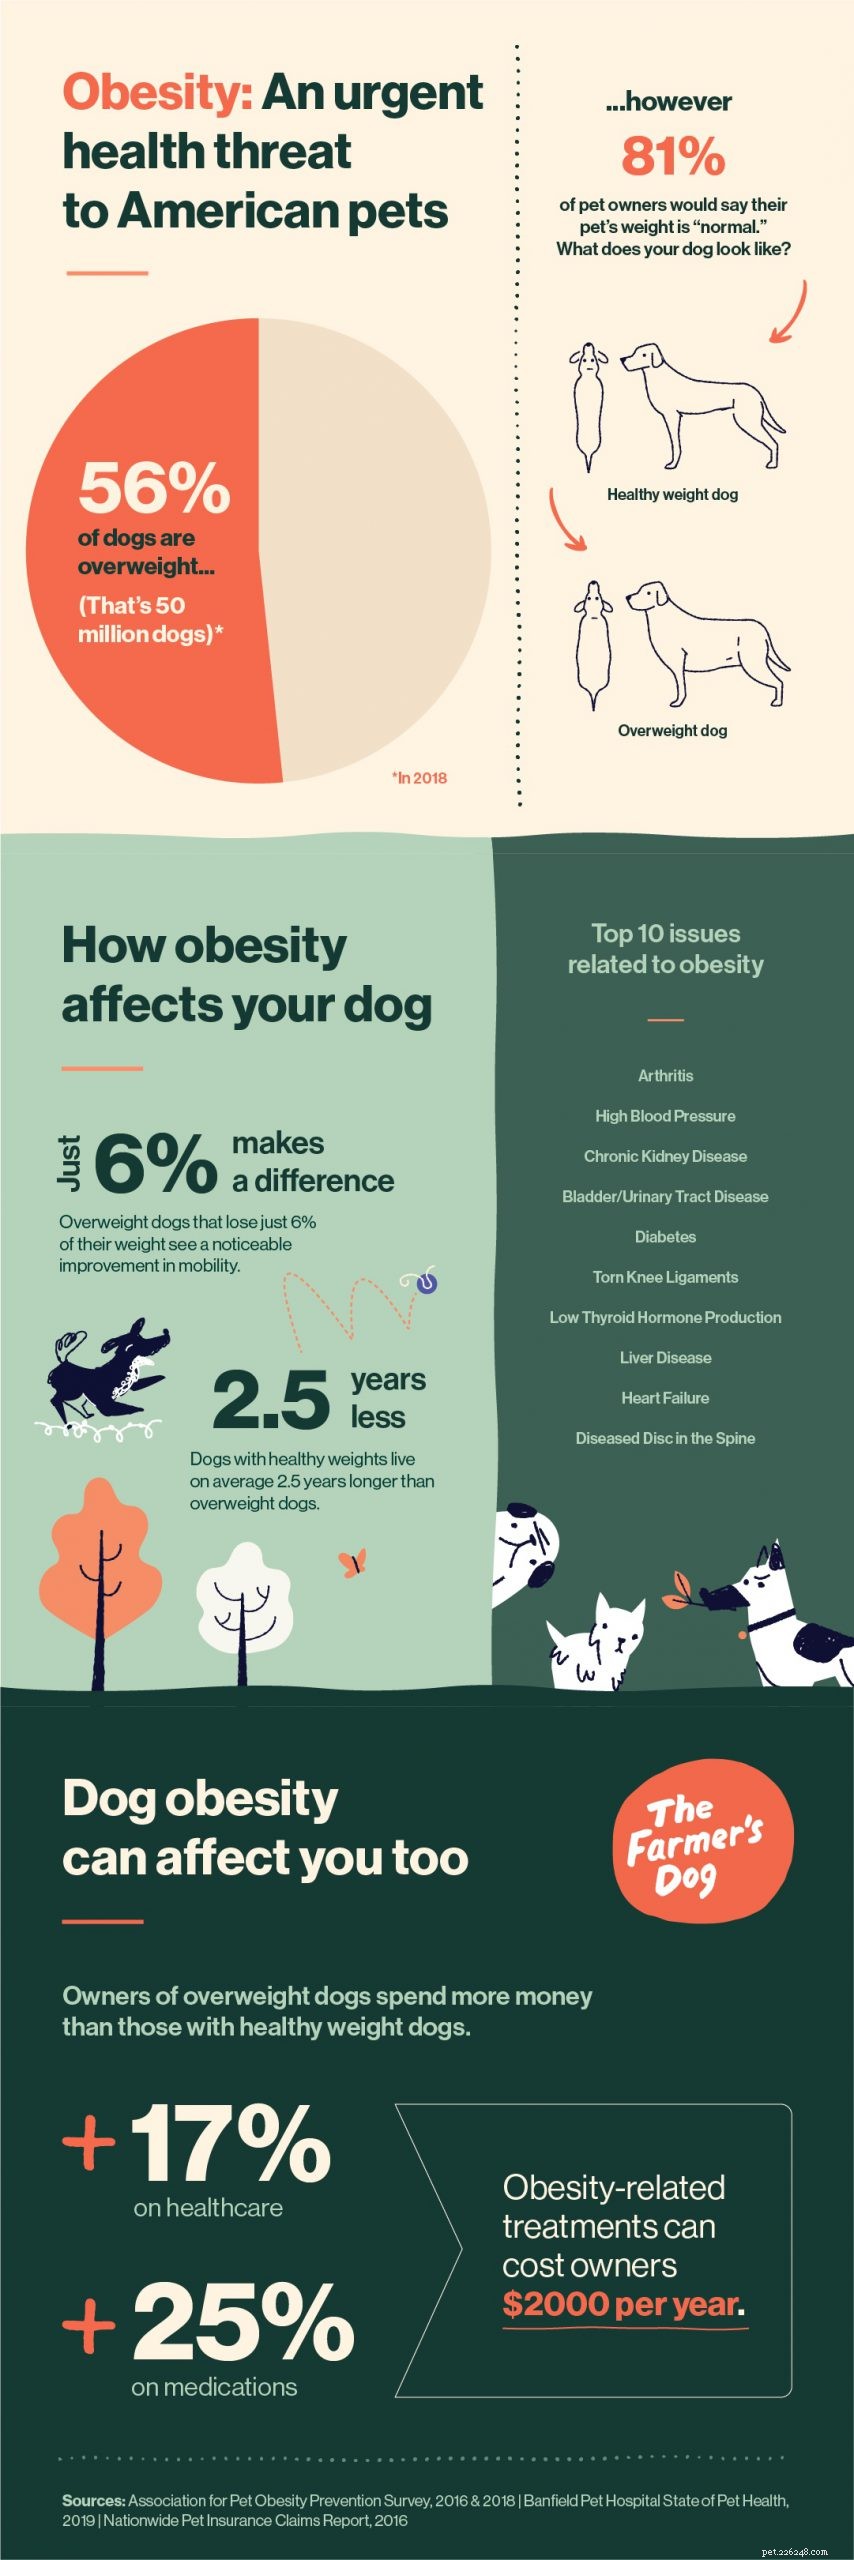 L obesità nei cani:un enorme minaccia per la salute nascosta in bella vista